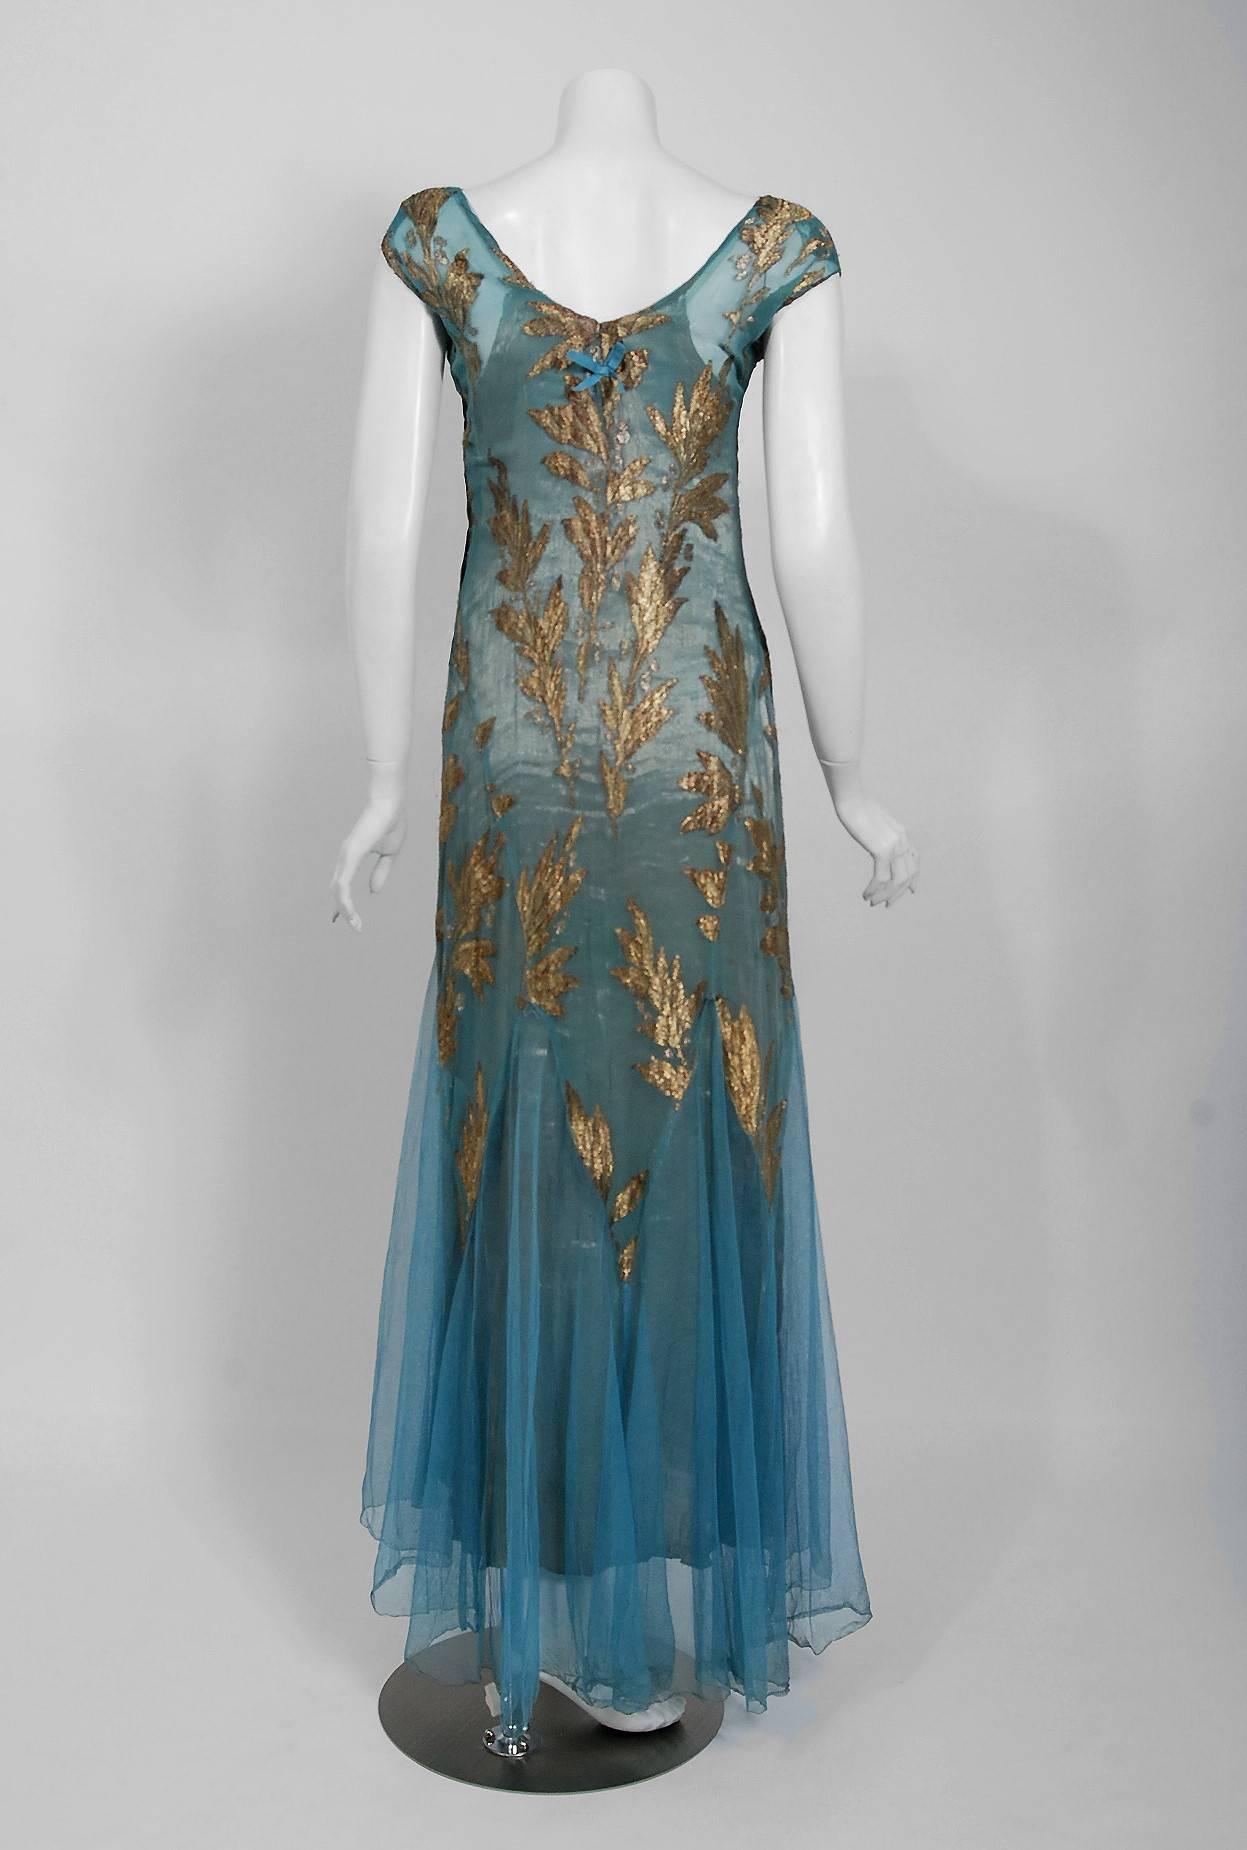 1930's French Couture Metallic-Gold Lamé Leaf Motif Blue Bias-Cut Evening Dress 2